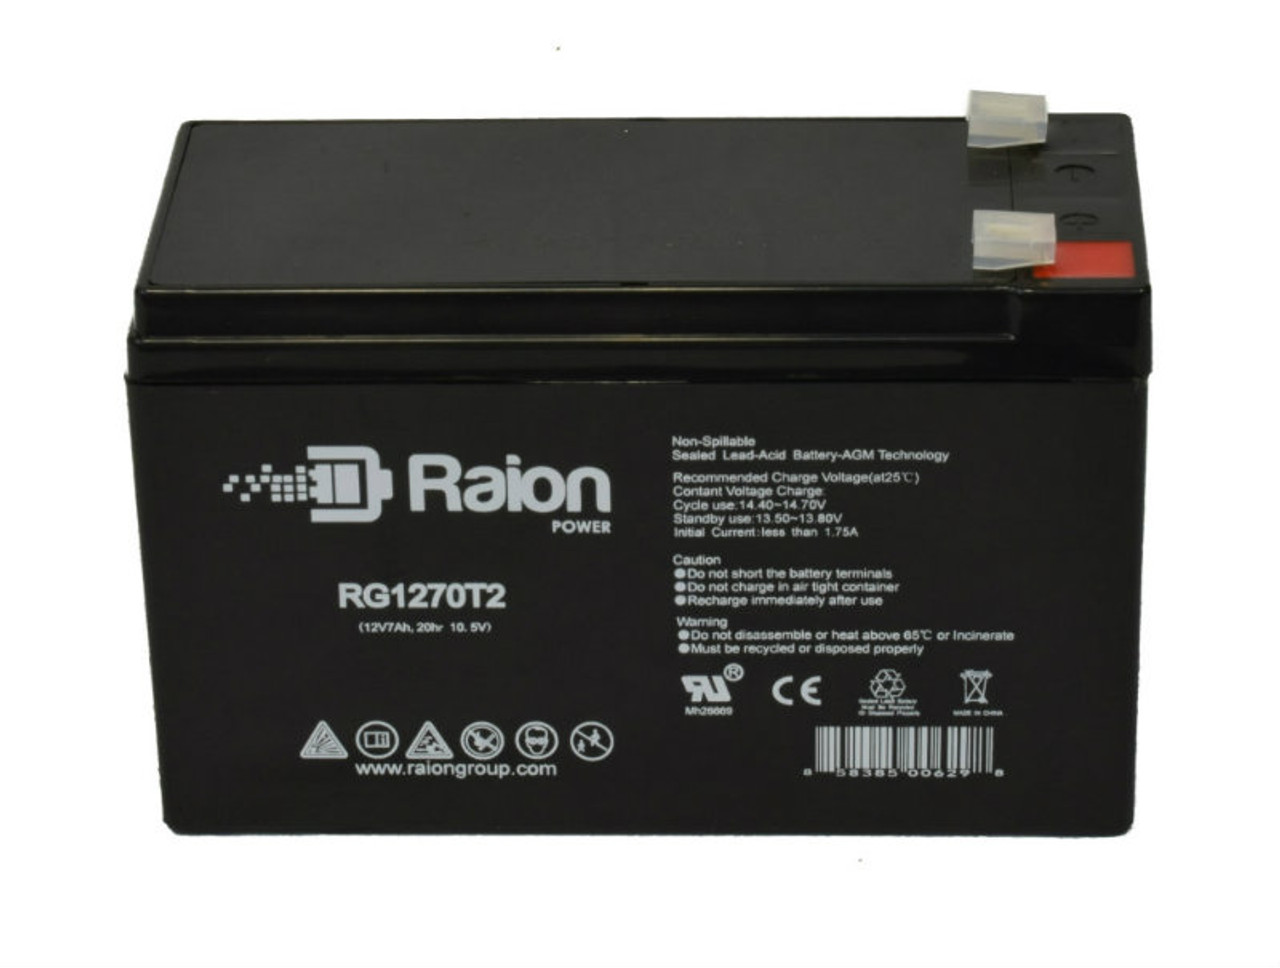 Raion Power RG1270T1 12V 7Ah Lead Acid Battery for ADI 5140XM